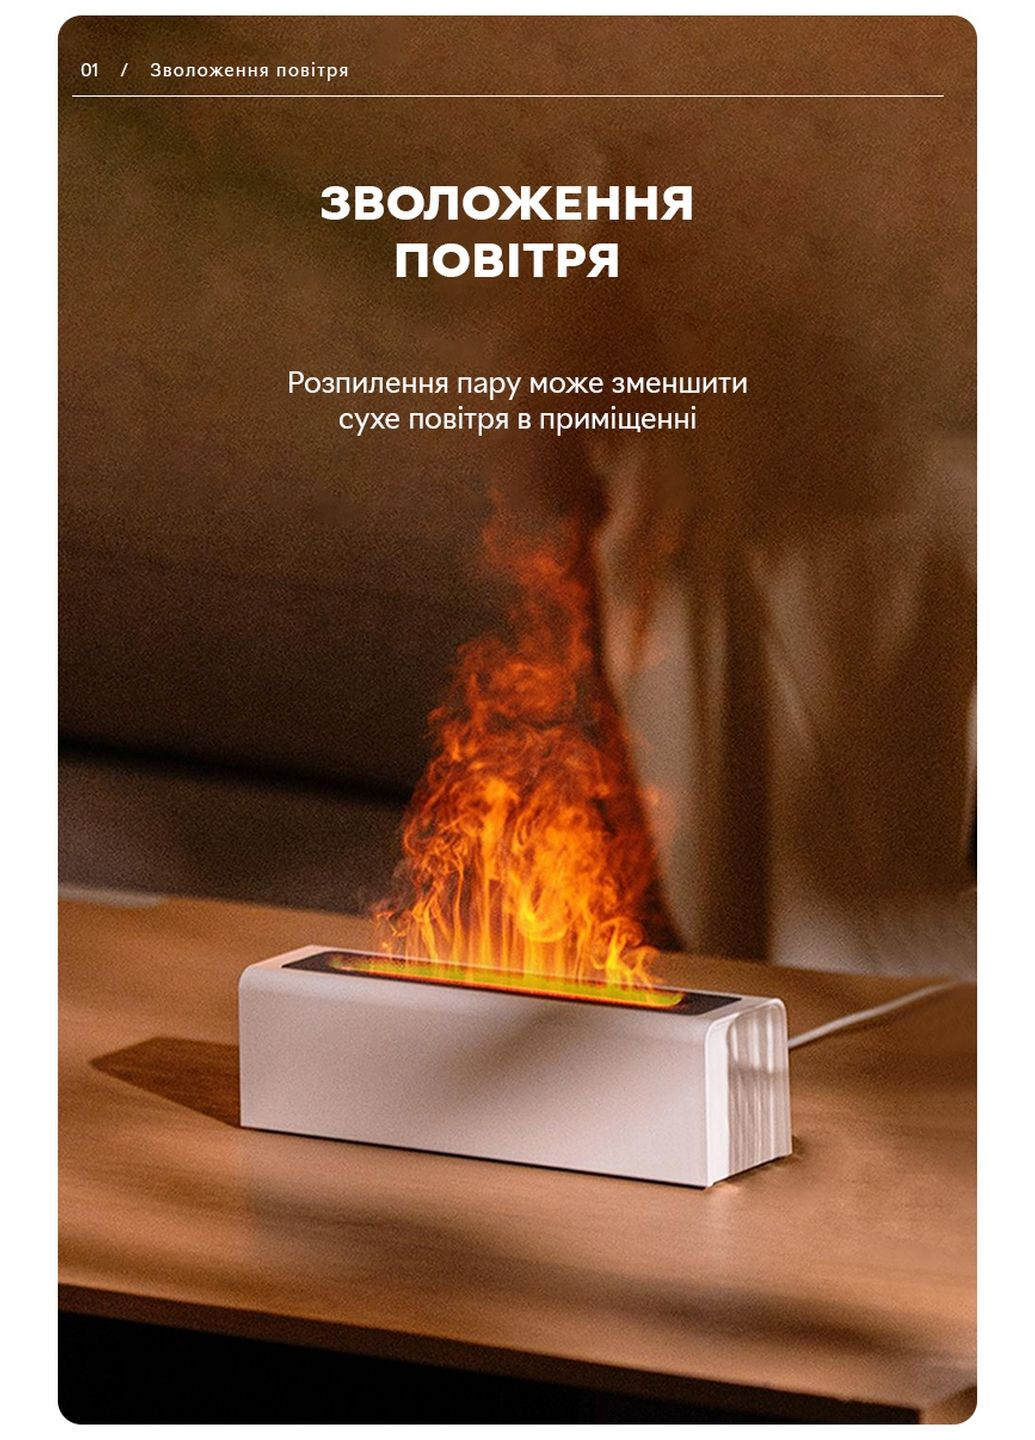 Зволожувач повітря портативний DQ-711 Nordic Style Flame V3 аромадифузор електричний, ефект полум'я, ПОДАРУНОК + 2 Арома олії Kinscoter (293416497)